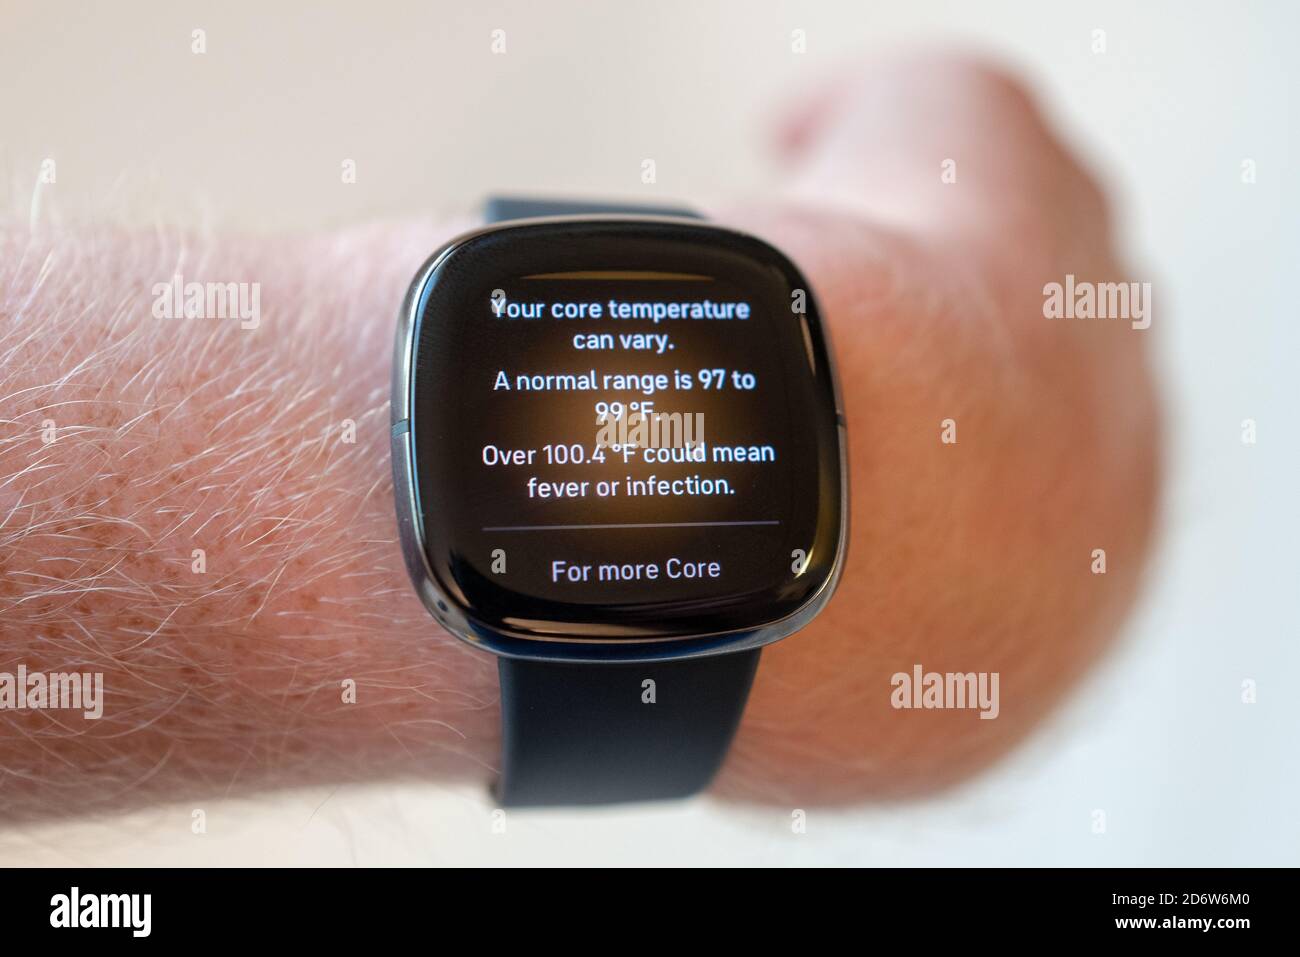 Explication de la fonction de suivi de la température sur le dispositif portable de suivi de la santé Fitbit Sense, San Ramon, Californie, 22 septembre 2020. () Banque D'Images